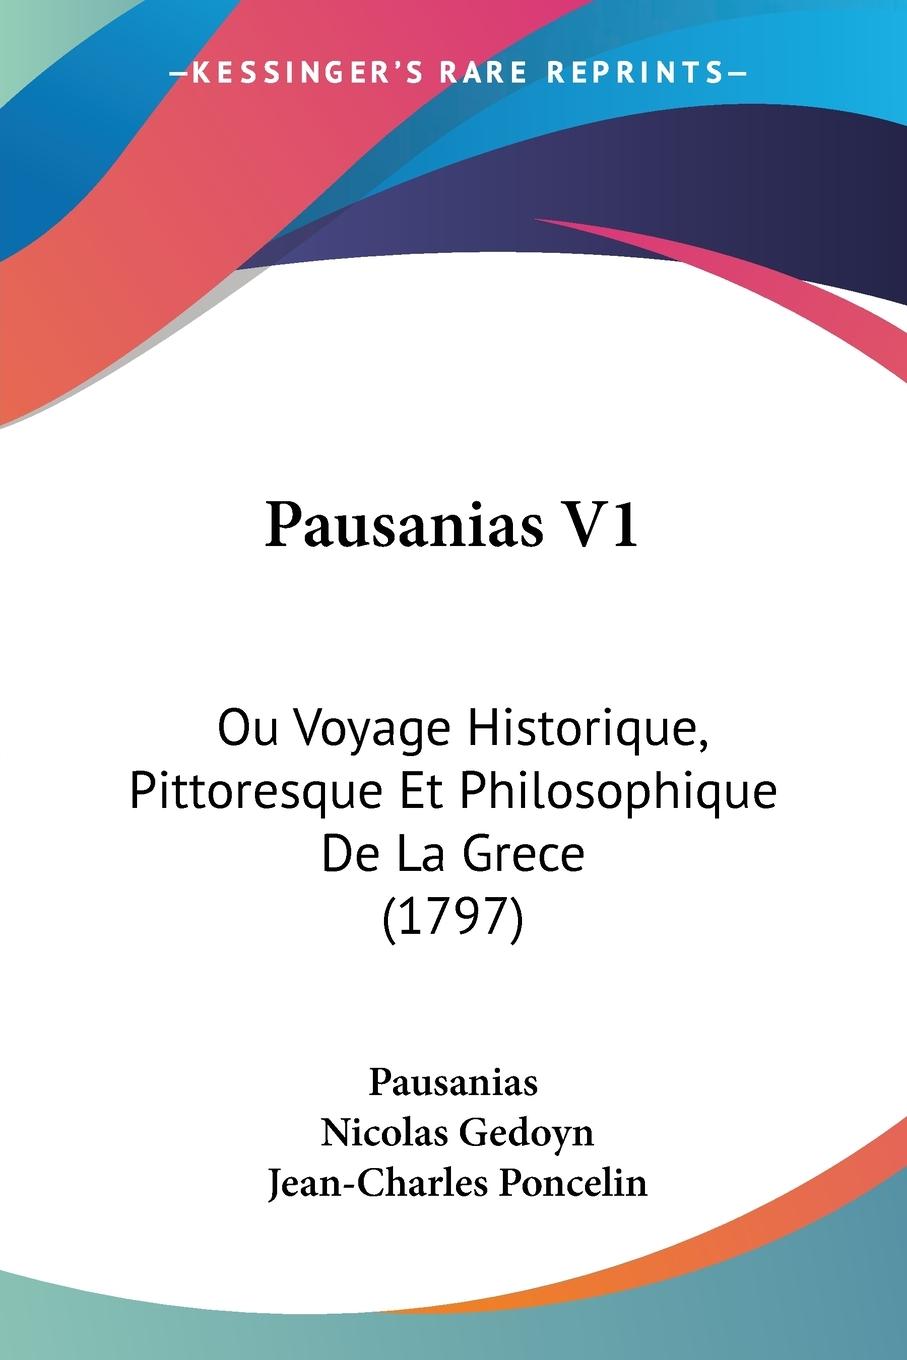 Pausanias V1 - Pausanias Gedoyn, Nicolas Poncelin, Jean-Charles